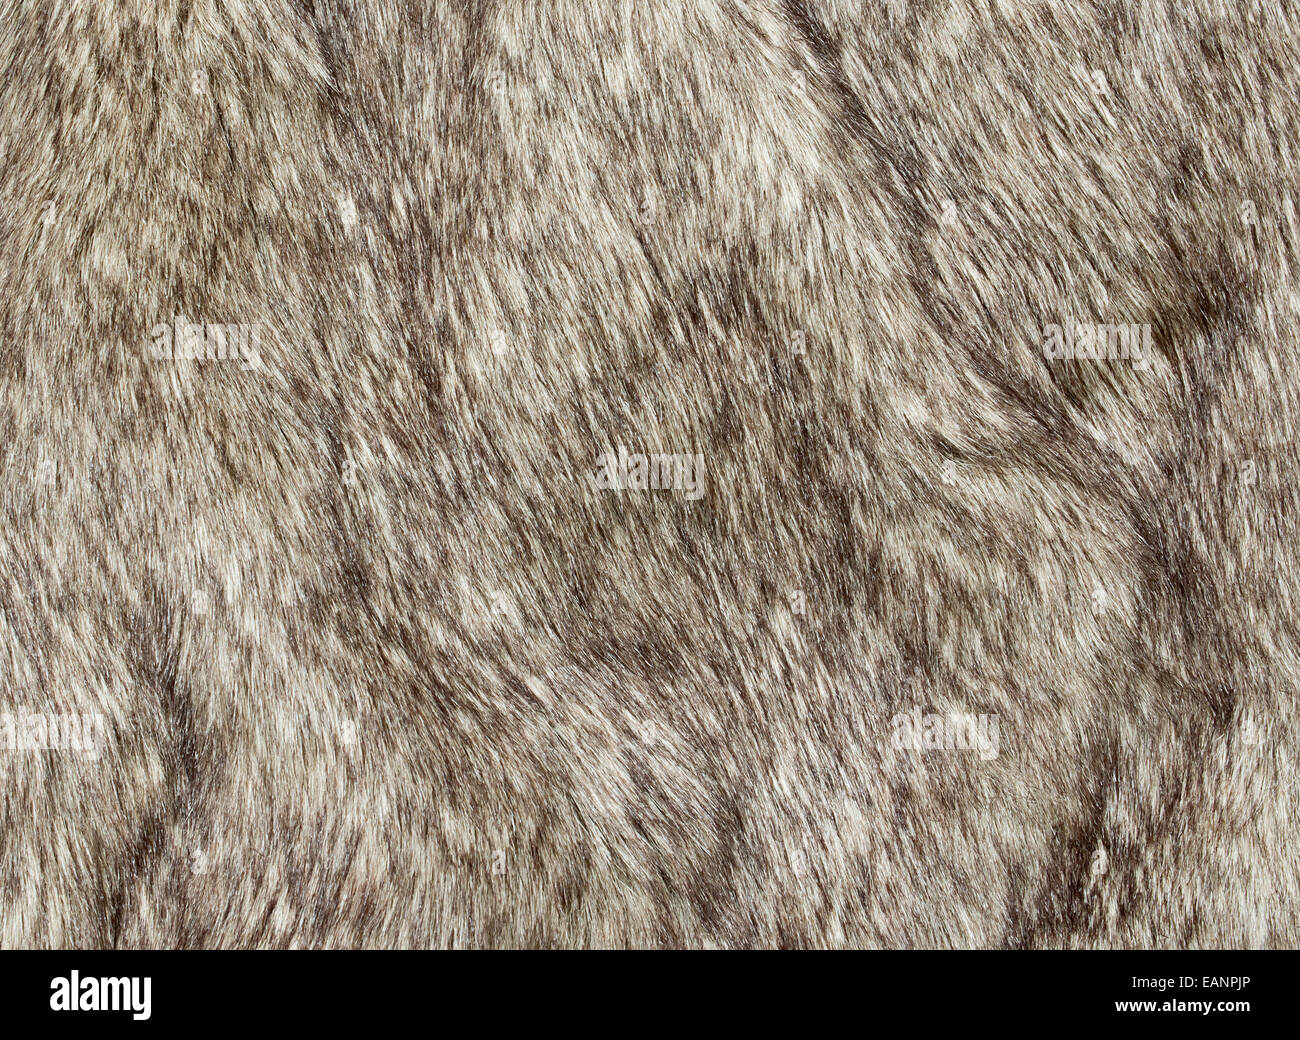 Pelliccia di tessuto per l'industria della moda utilizzato per ricreare artificialmente di pelli animali ivi comprese le renne e coyote. L'uso di un Foto Stock